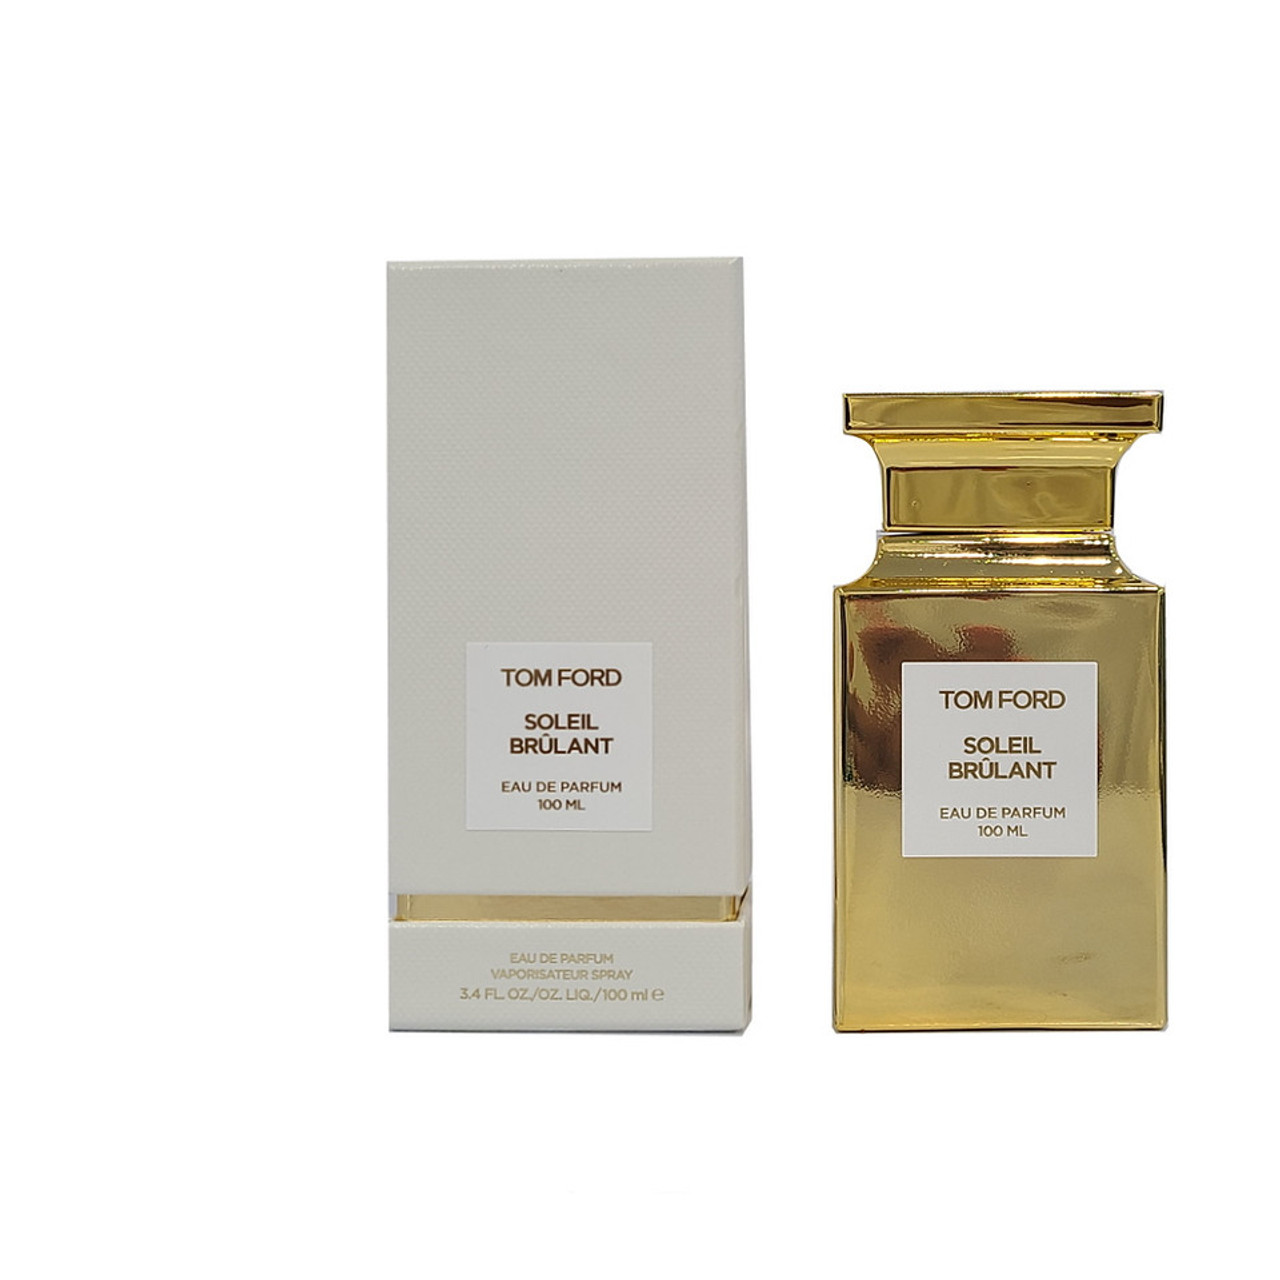 Tom Ford Soleil Brulant Eau de Parfum 3.4 oz / 100 ml Spray For Women -  fragrances4ever.com